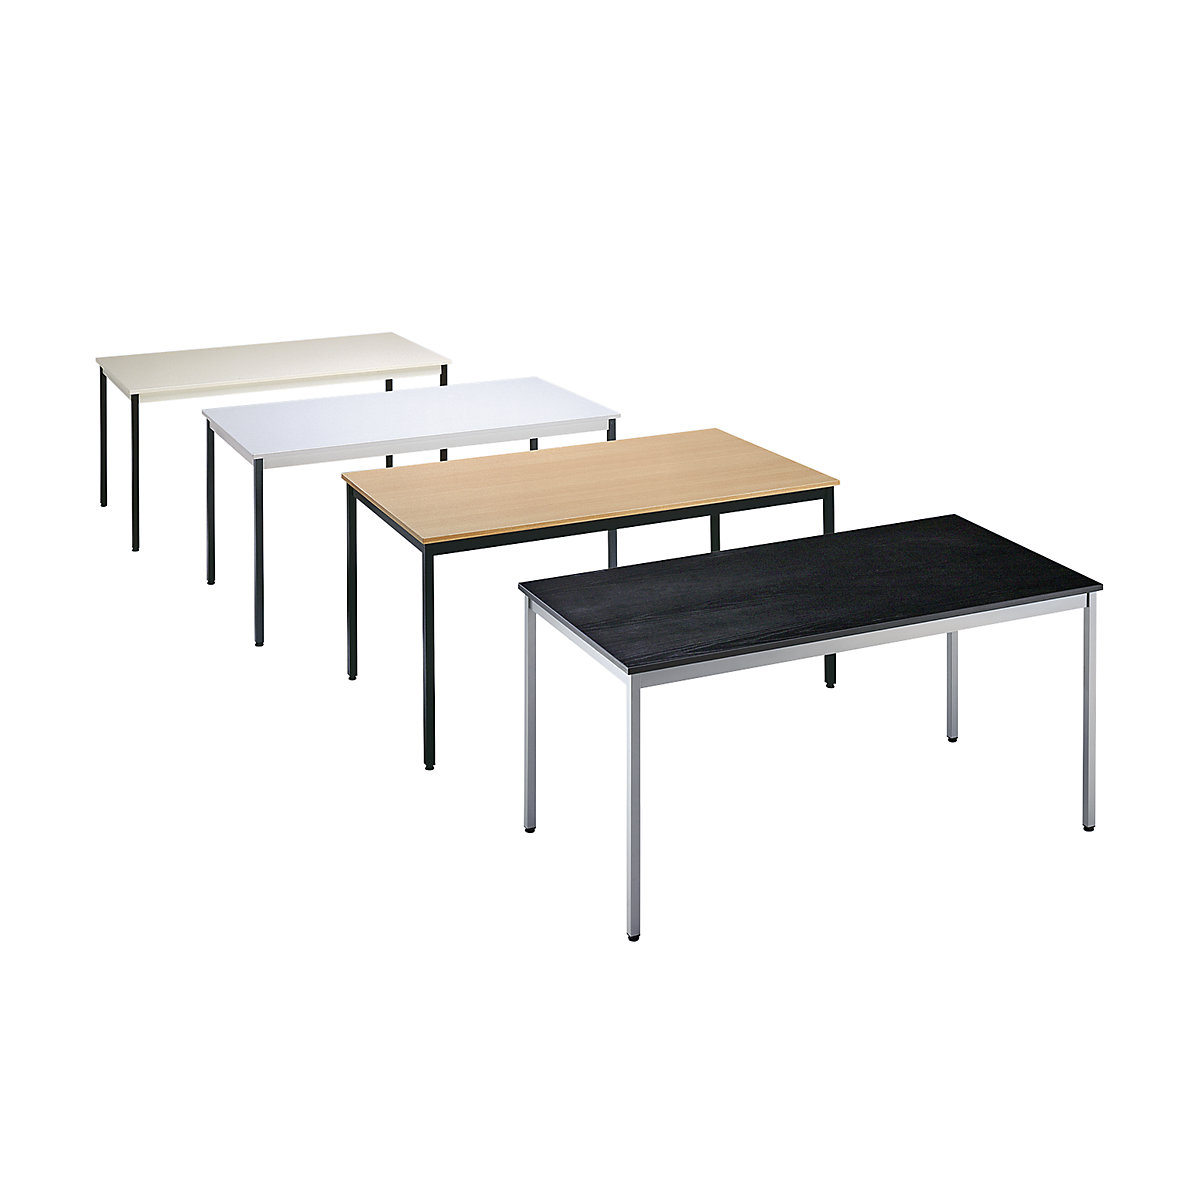 Večnamenska miza – eurokraft basic, pravokotna oblika, ŠxV 1200 x 740 mm, globina 600 mm, plošča svetlo siva, ogrodje bazaltno sivo-1